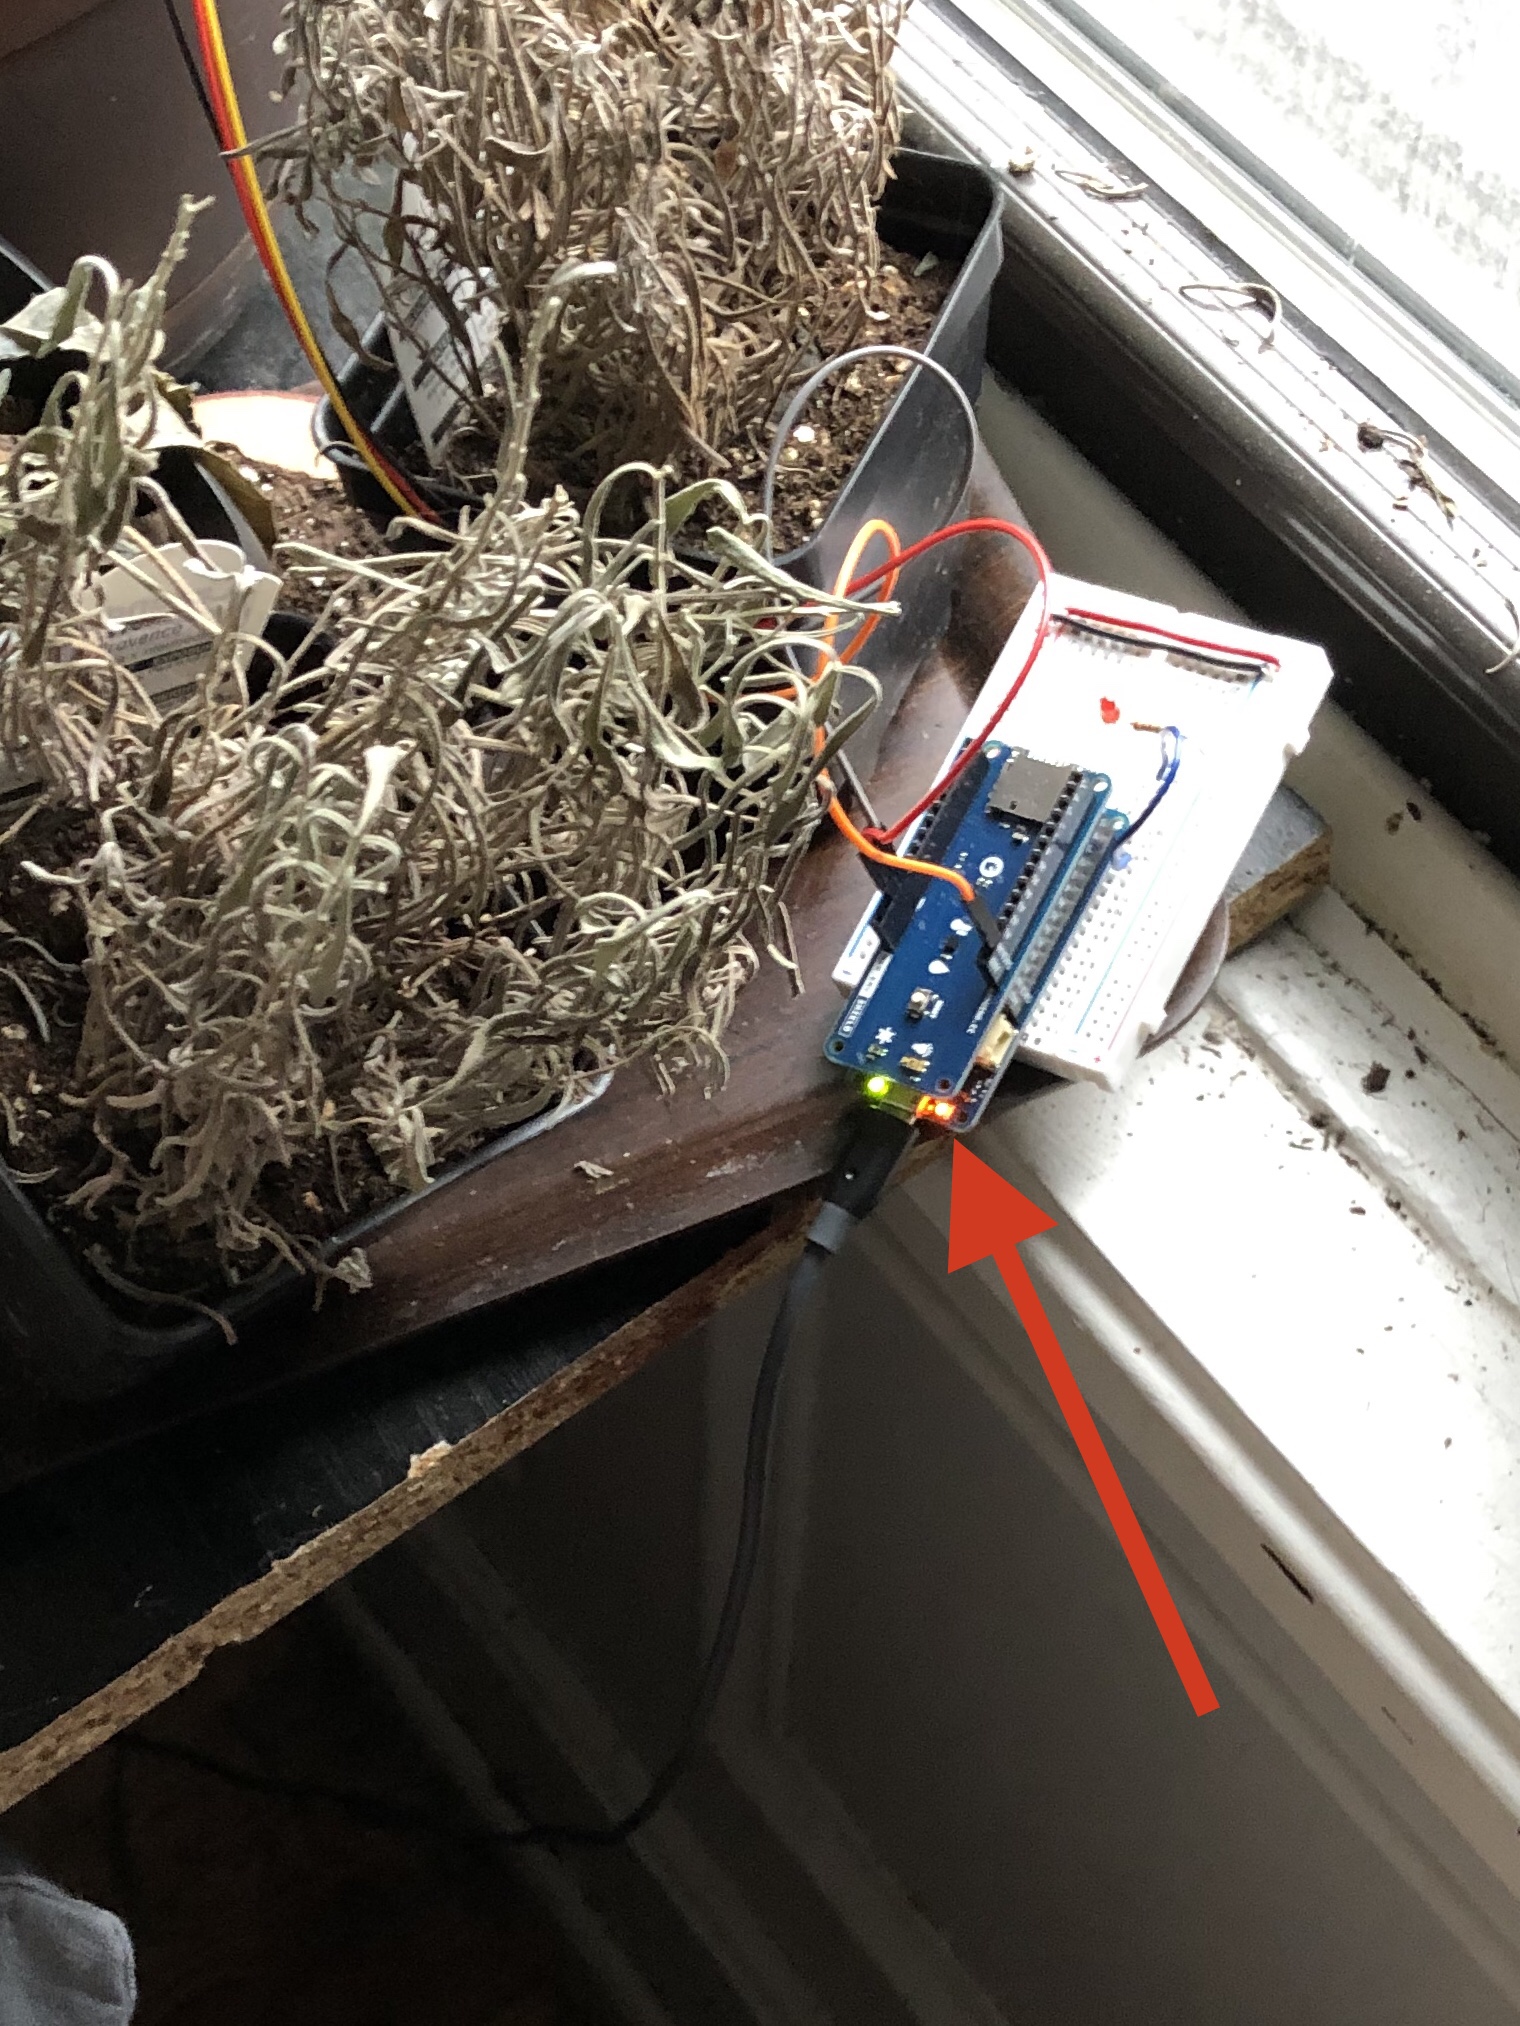 Plant Sensor Setup with Arduino MKR 1010 and ENV Shield and the pesky orange light